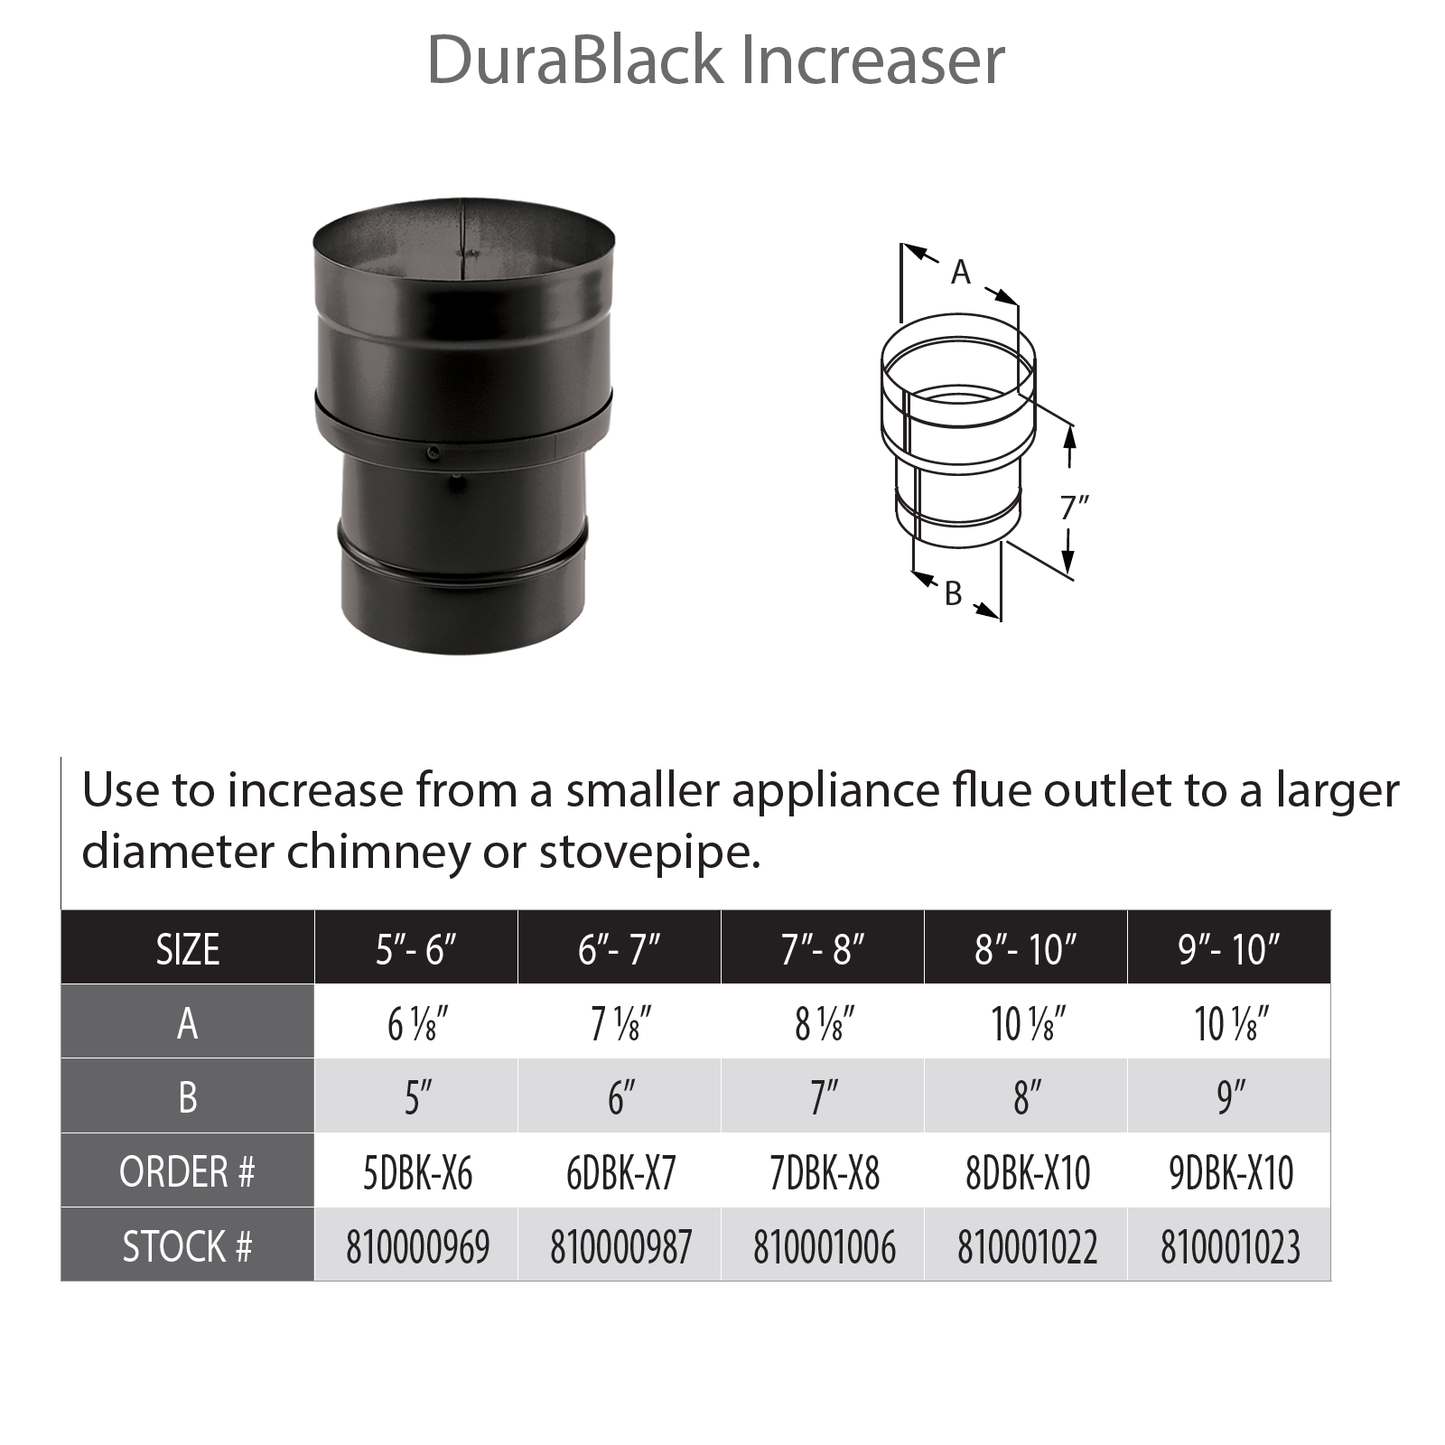 DuraVent DuraBlack 6" Diameter Black Increaser 5" - 6" | 5DBK-X6